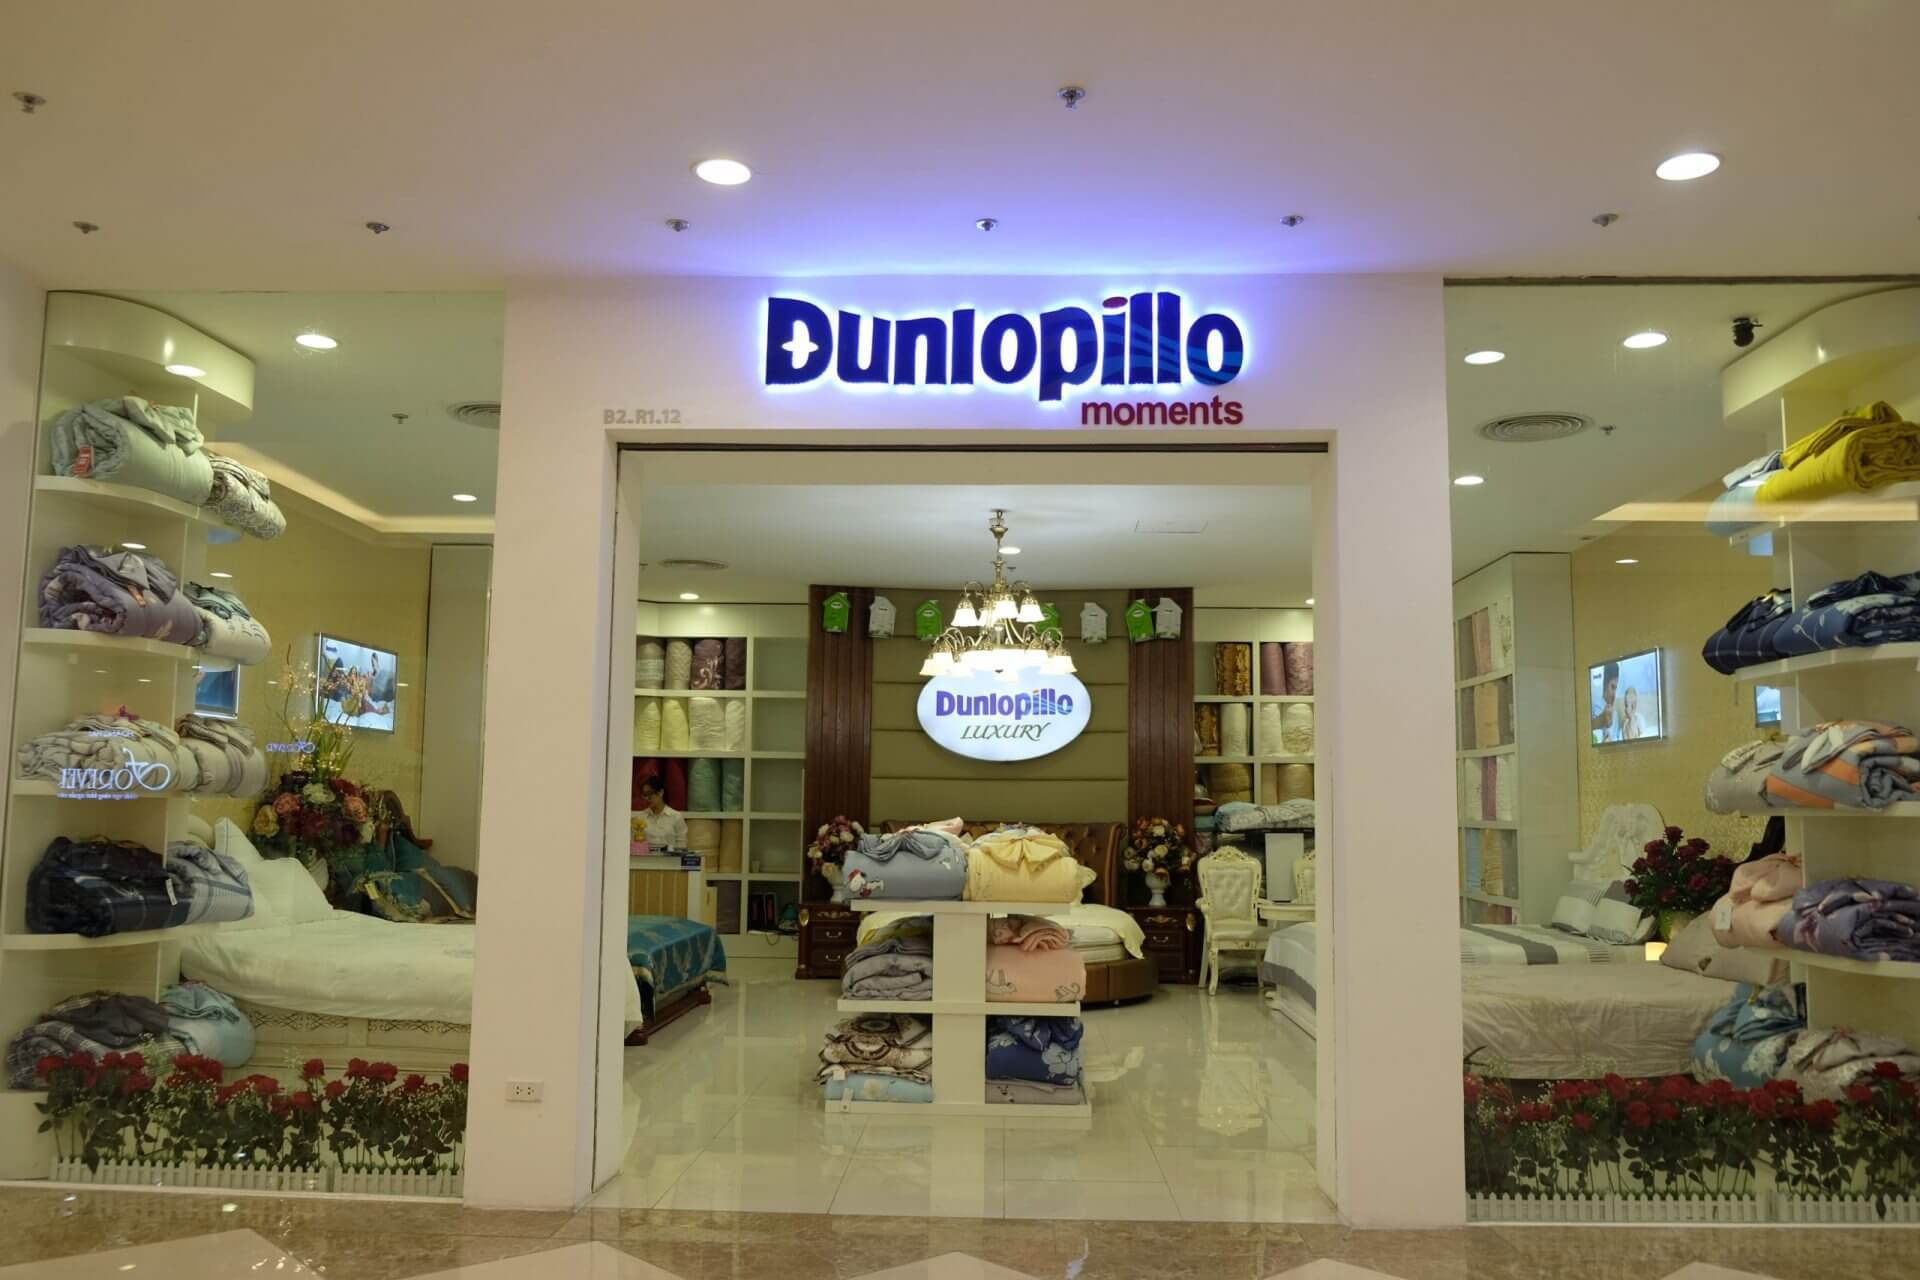 Dunlopillo cửa hàng nệm chất lượng, bán chạy hàng đầu